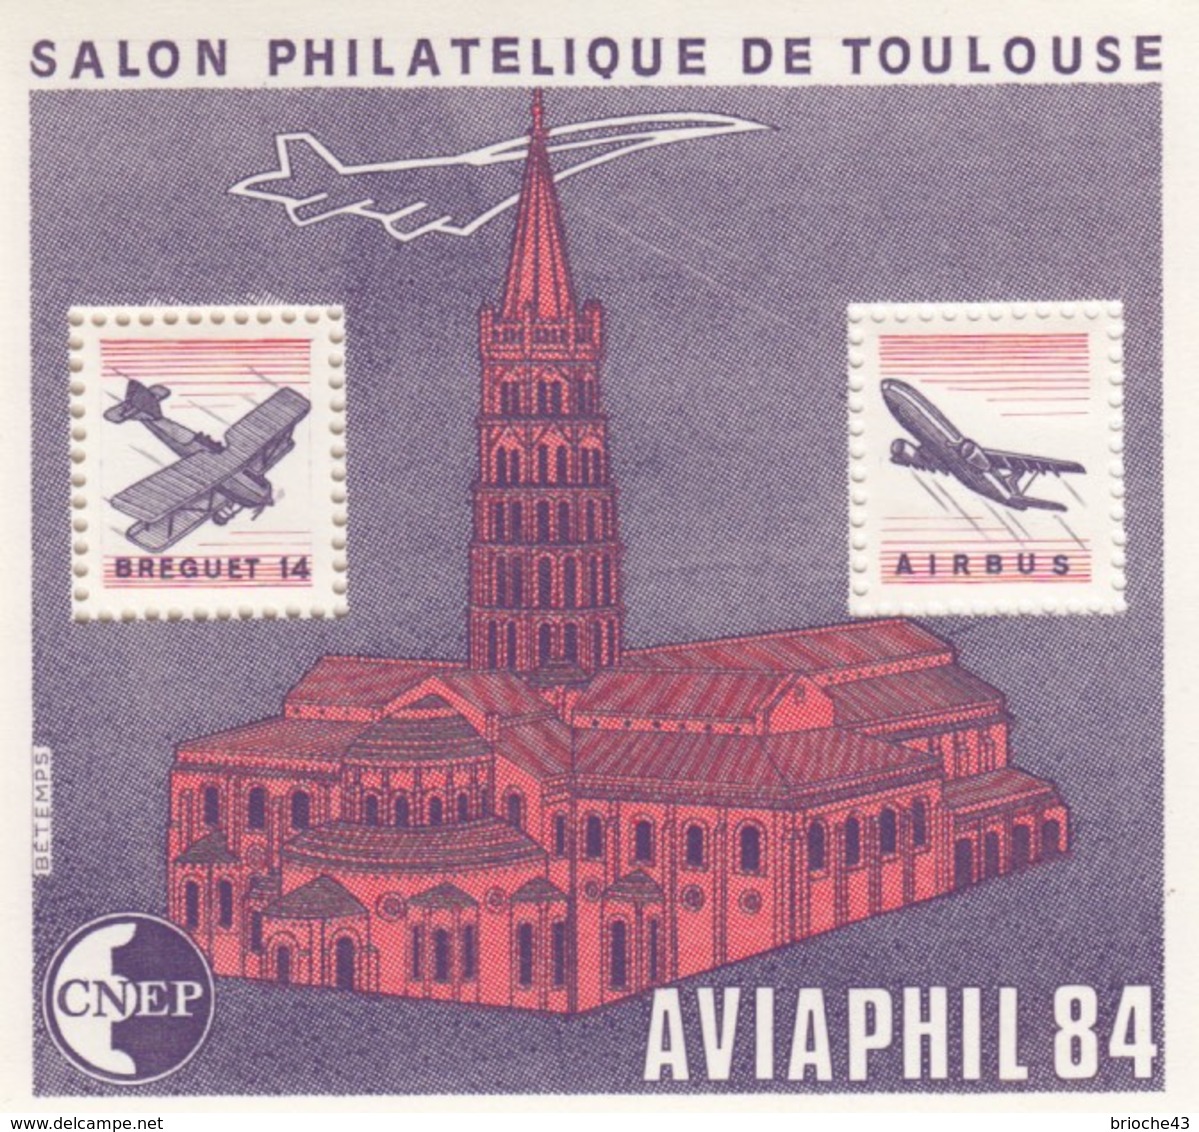 FRANCE - 1984 BLOC FEUILLET N°5   C.N.E.P. - AVIAPHIL  SALON PHILATELIQUE DE TOULOUSE  / 2 - CNEP